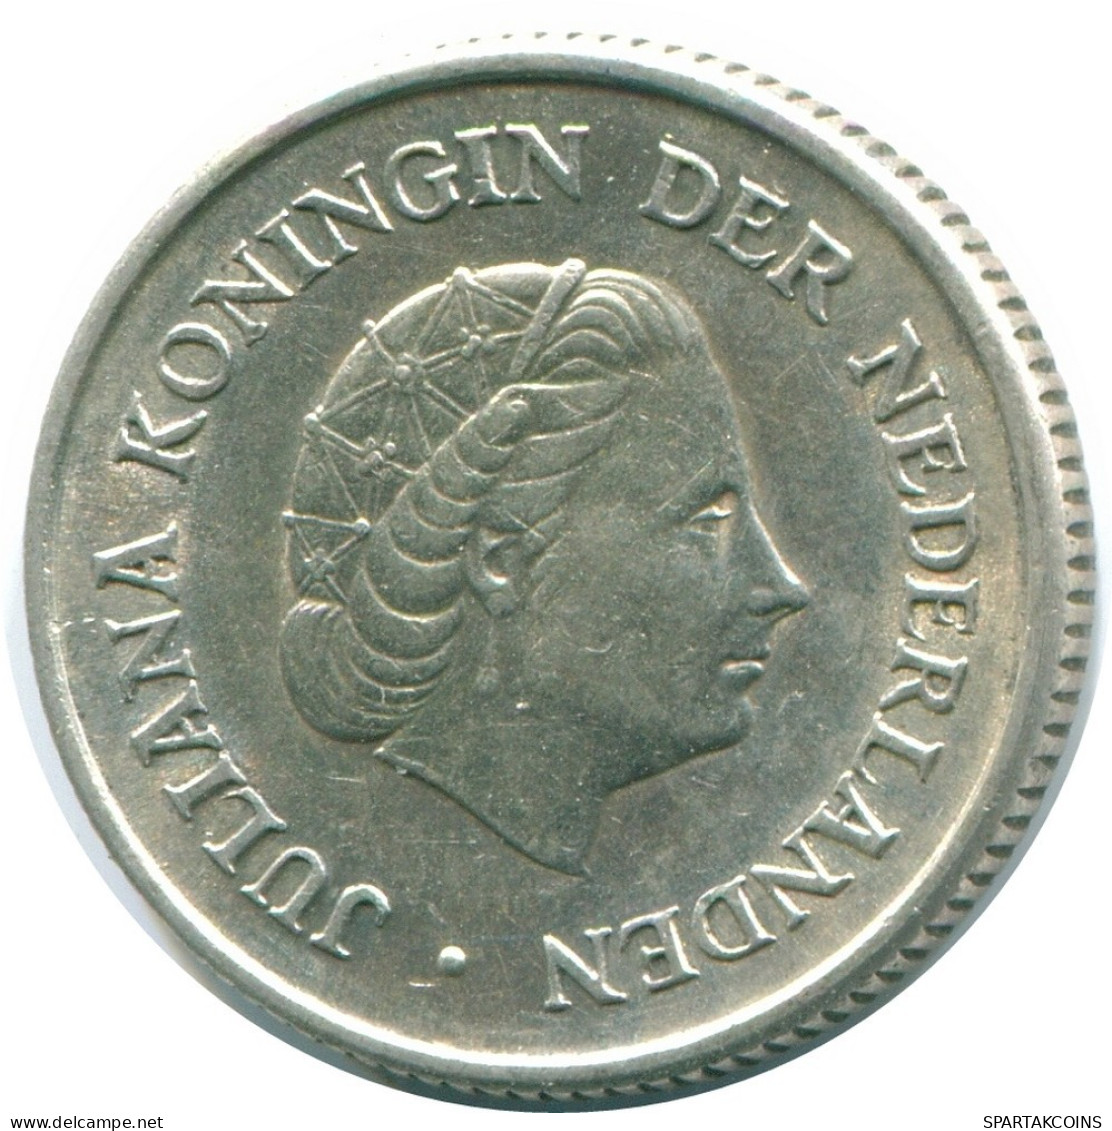 1/4 GULDEN 1967 NIEDERLÄNDISCHE ANTILLEN SILBER Koloniale Münze #NL11467.4.D.A - Antilles Néerlandaises